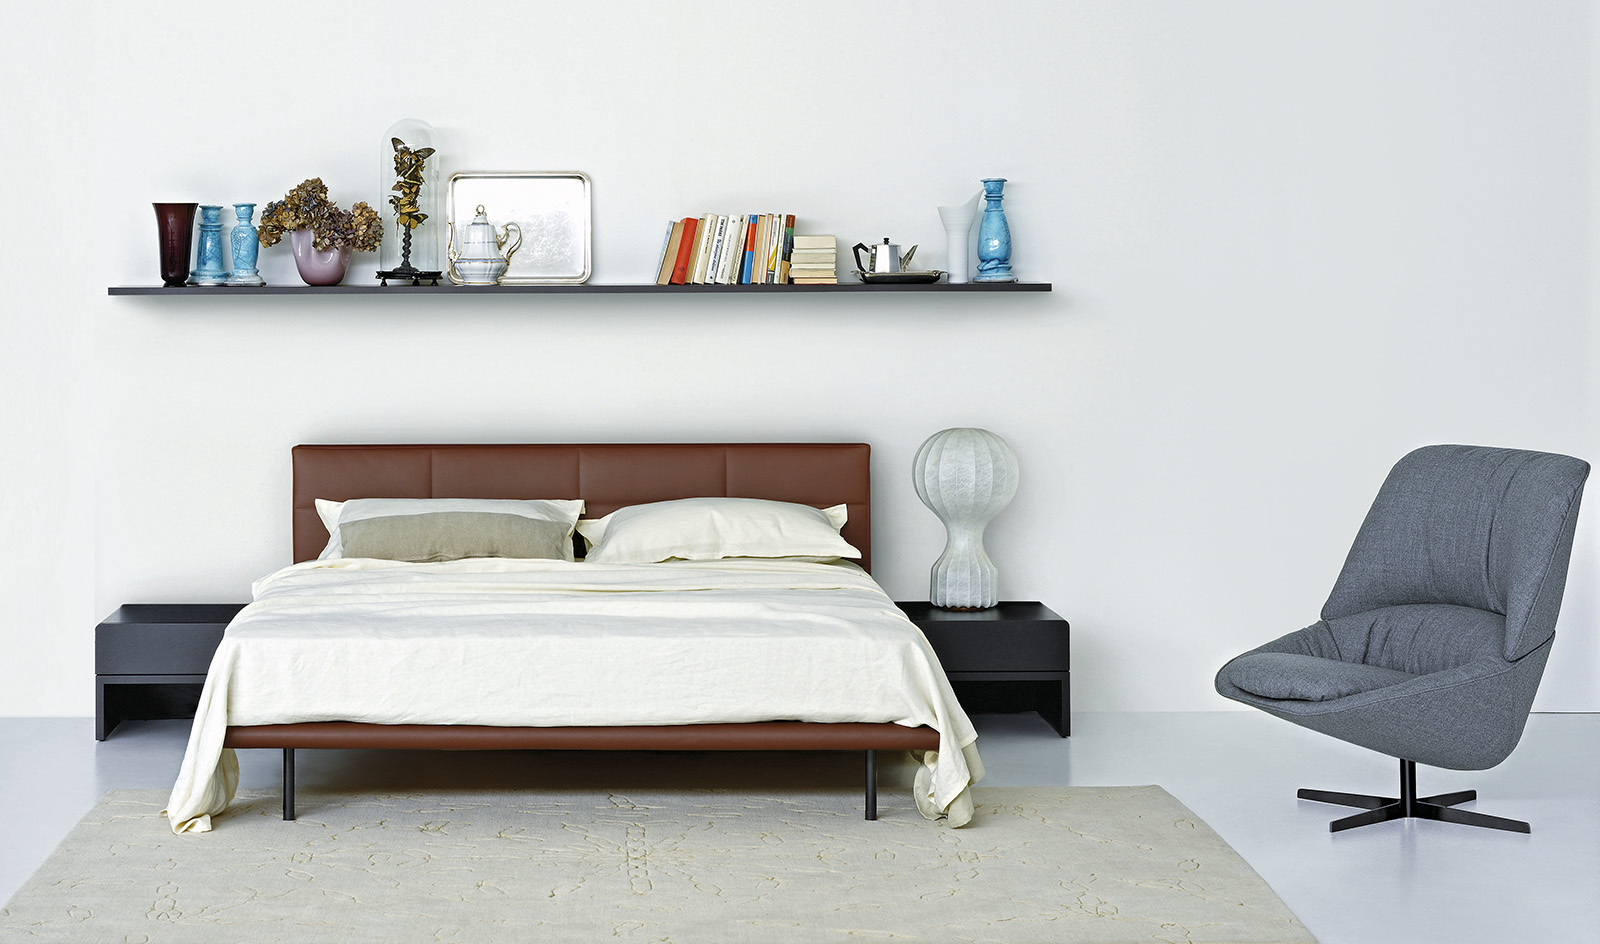 arflex-Ledletto-Bett-Kopfteil-gepolstert-design-Cini-Boeri-abziehbar-Einzelbett-Doppelbett-Schlafzimmer-Hospitality-Projekt-personalisierbar-Luxus-madeinitaly-modern-zeitgenössisch